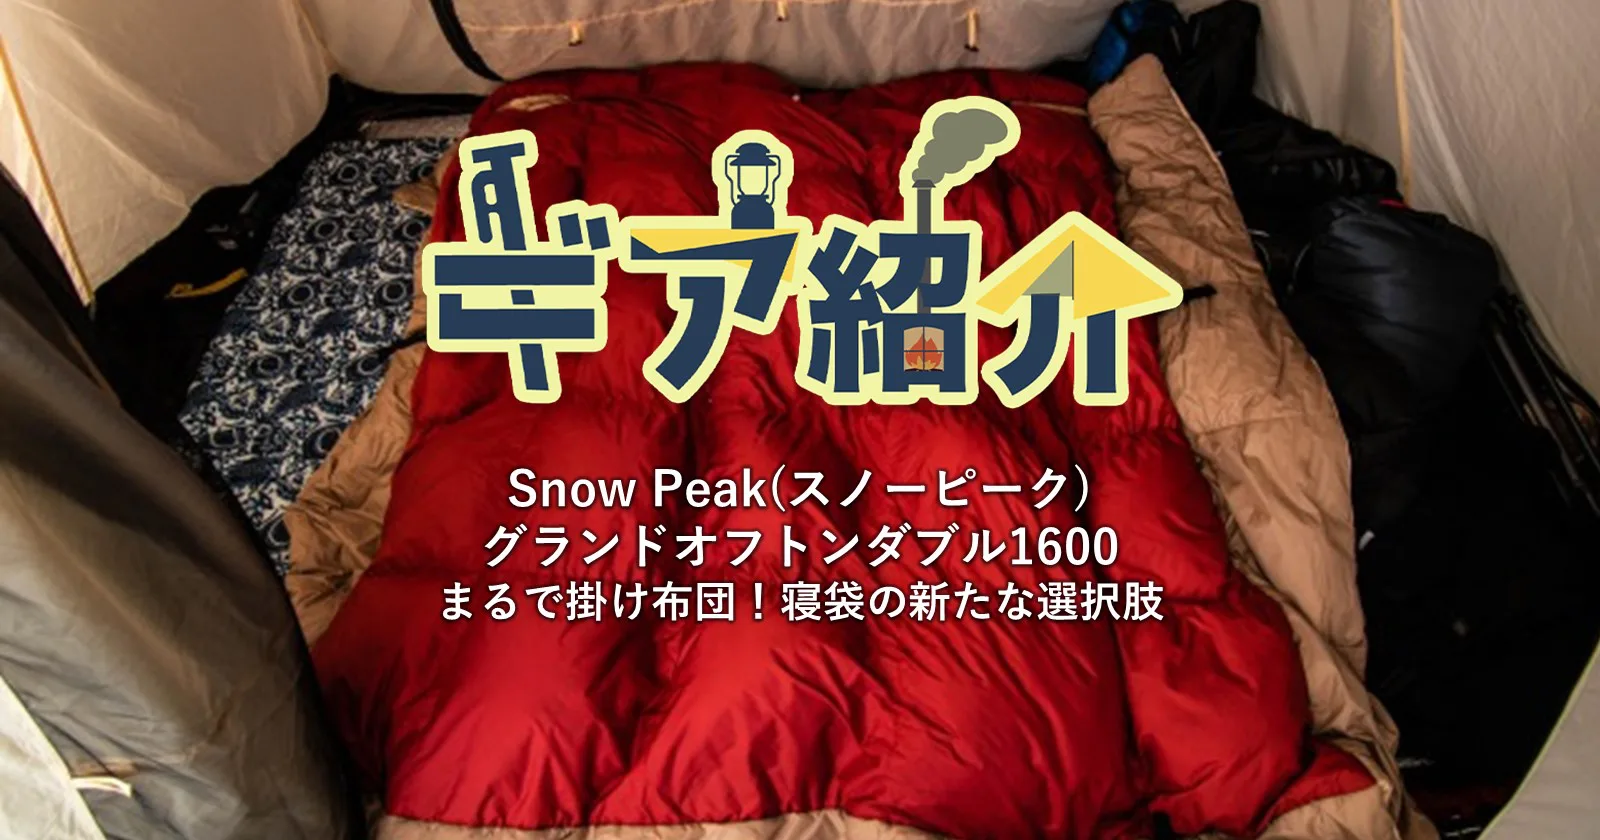 【美品】グランドオフトン ダブル1600【snow peak】